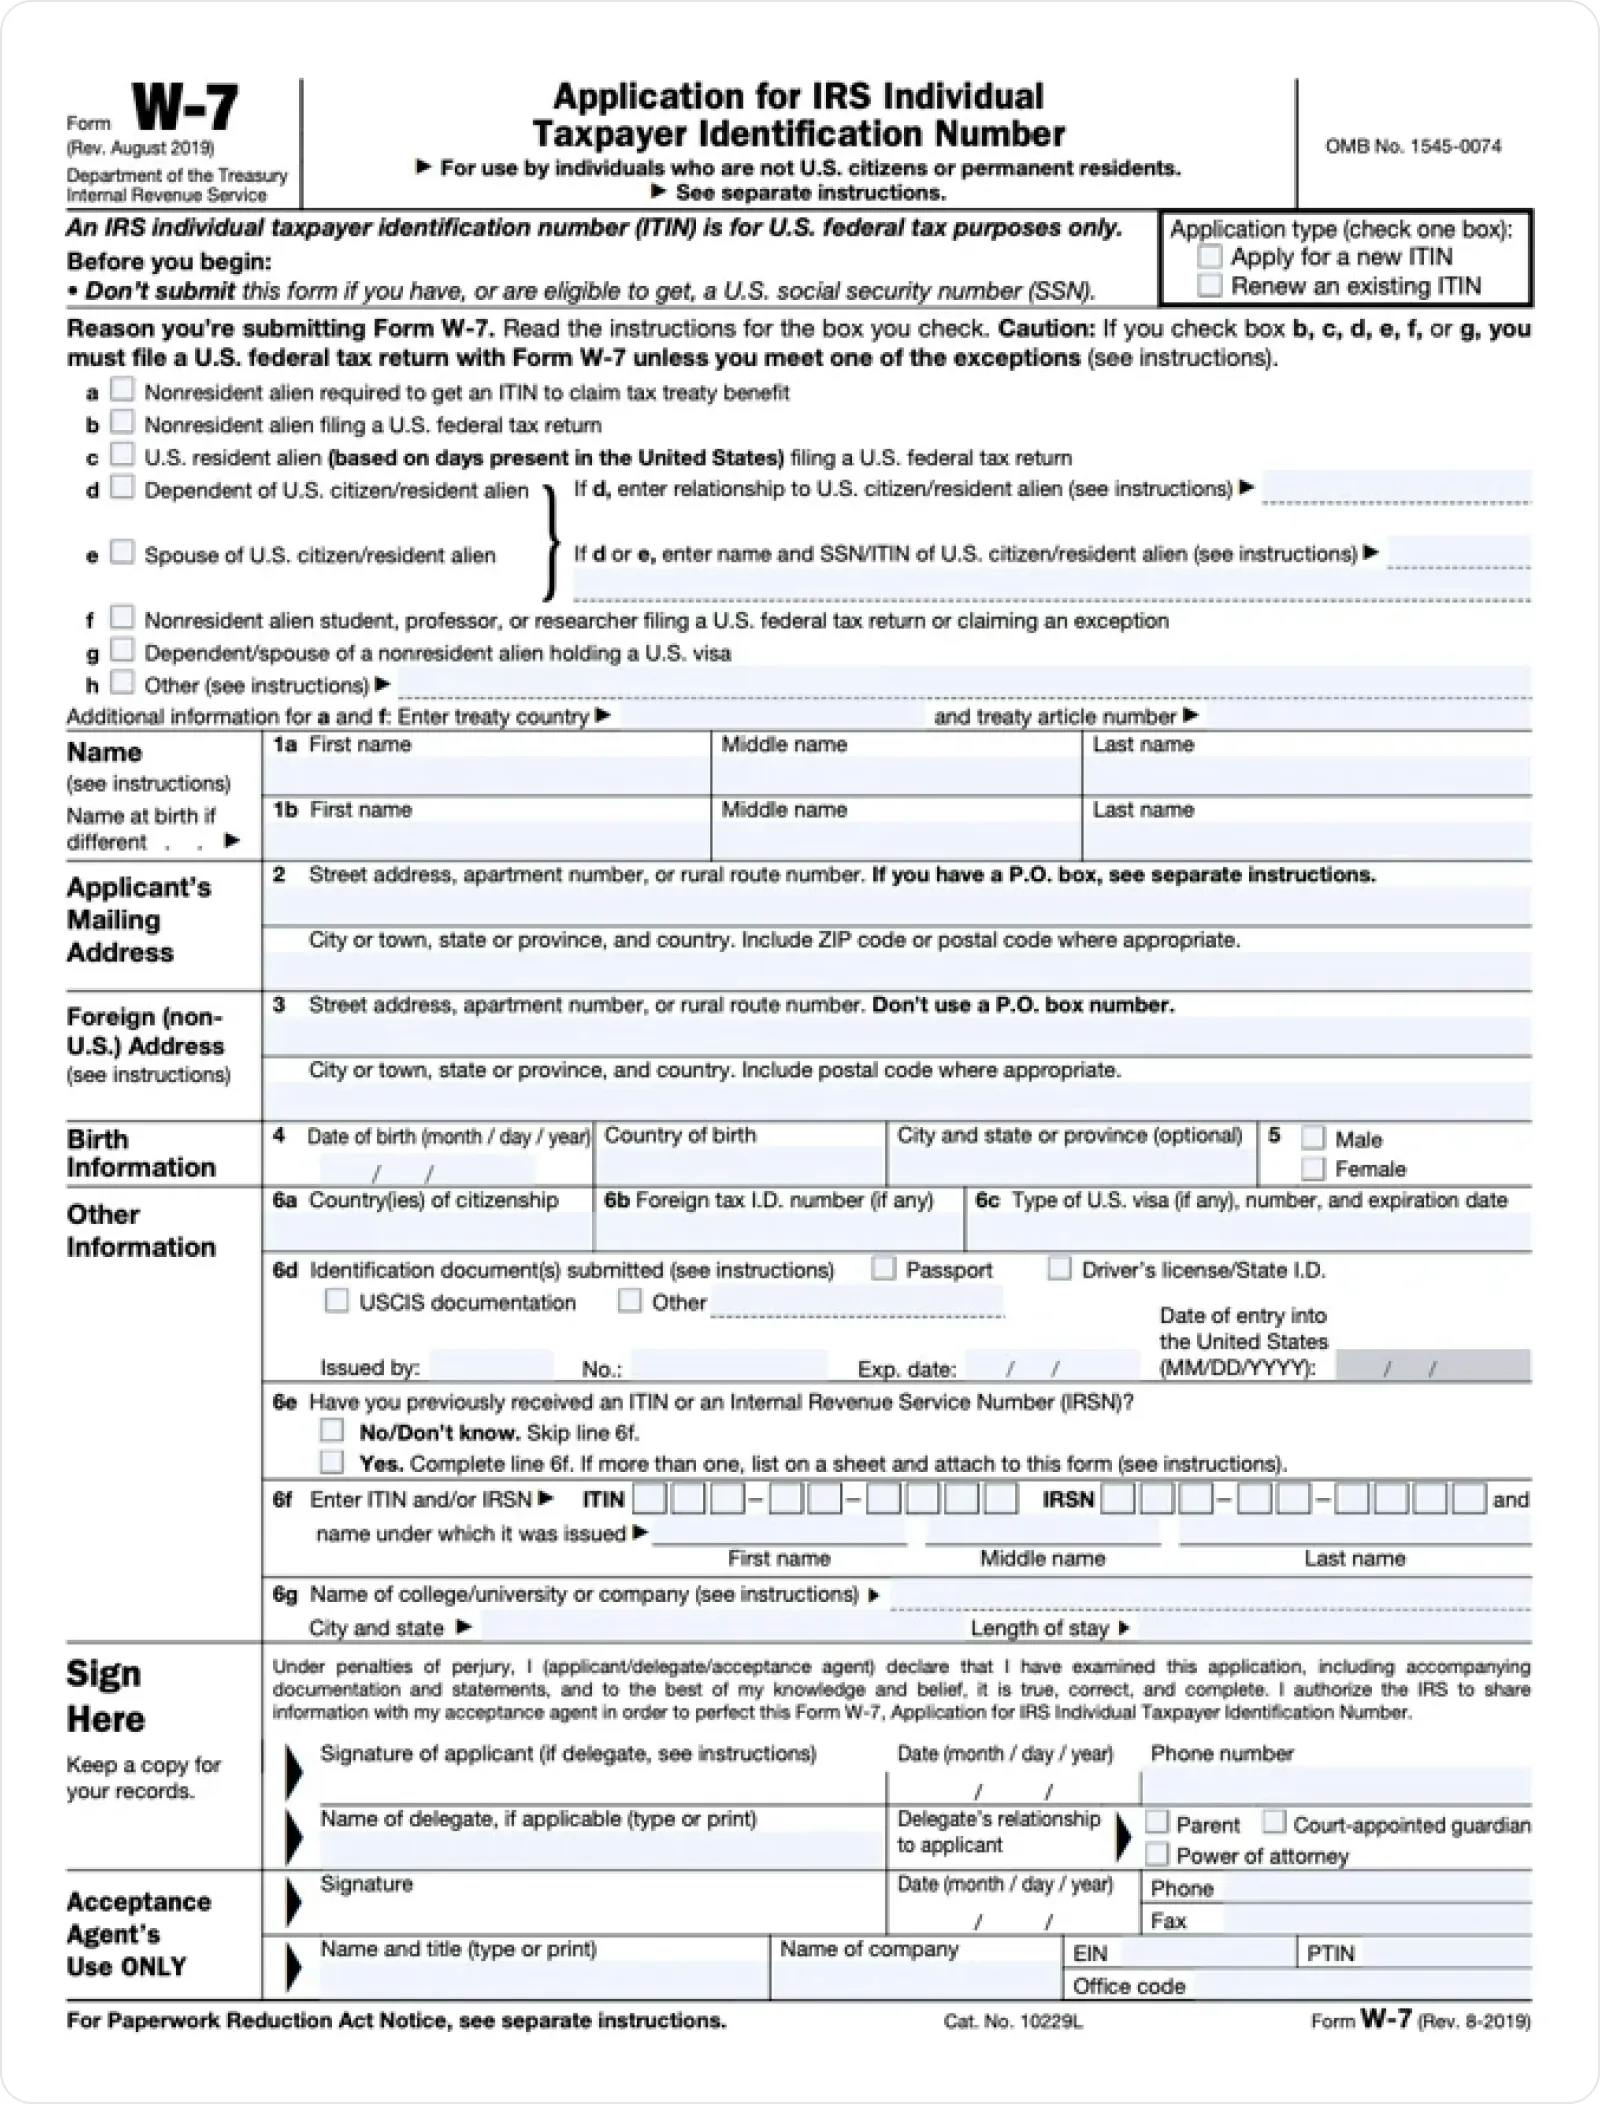 IRS w-7 form